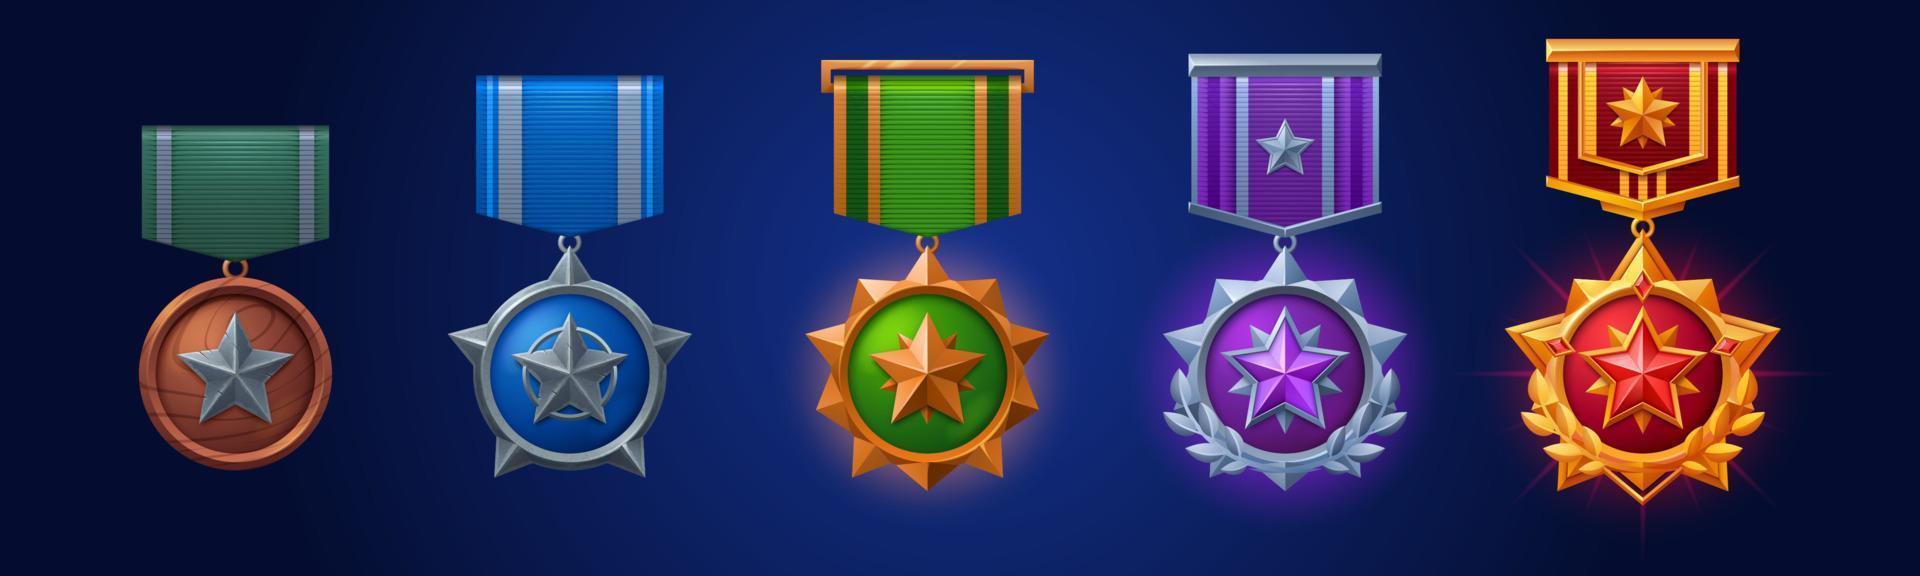 militaire médailles, armée badges avec étoile et ruban vecteur